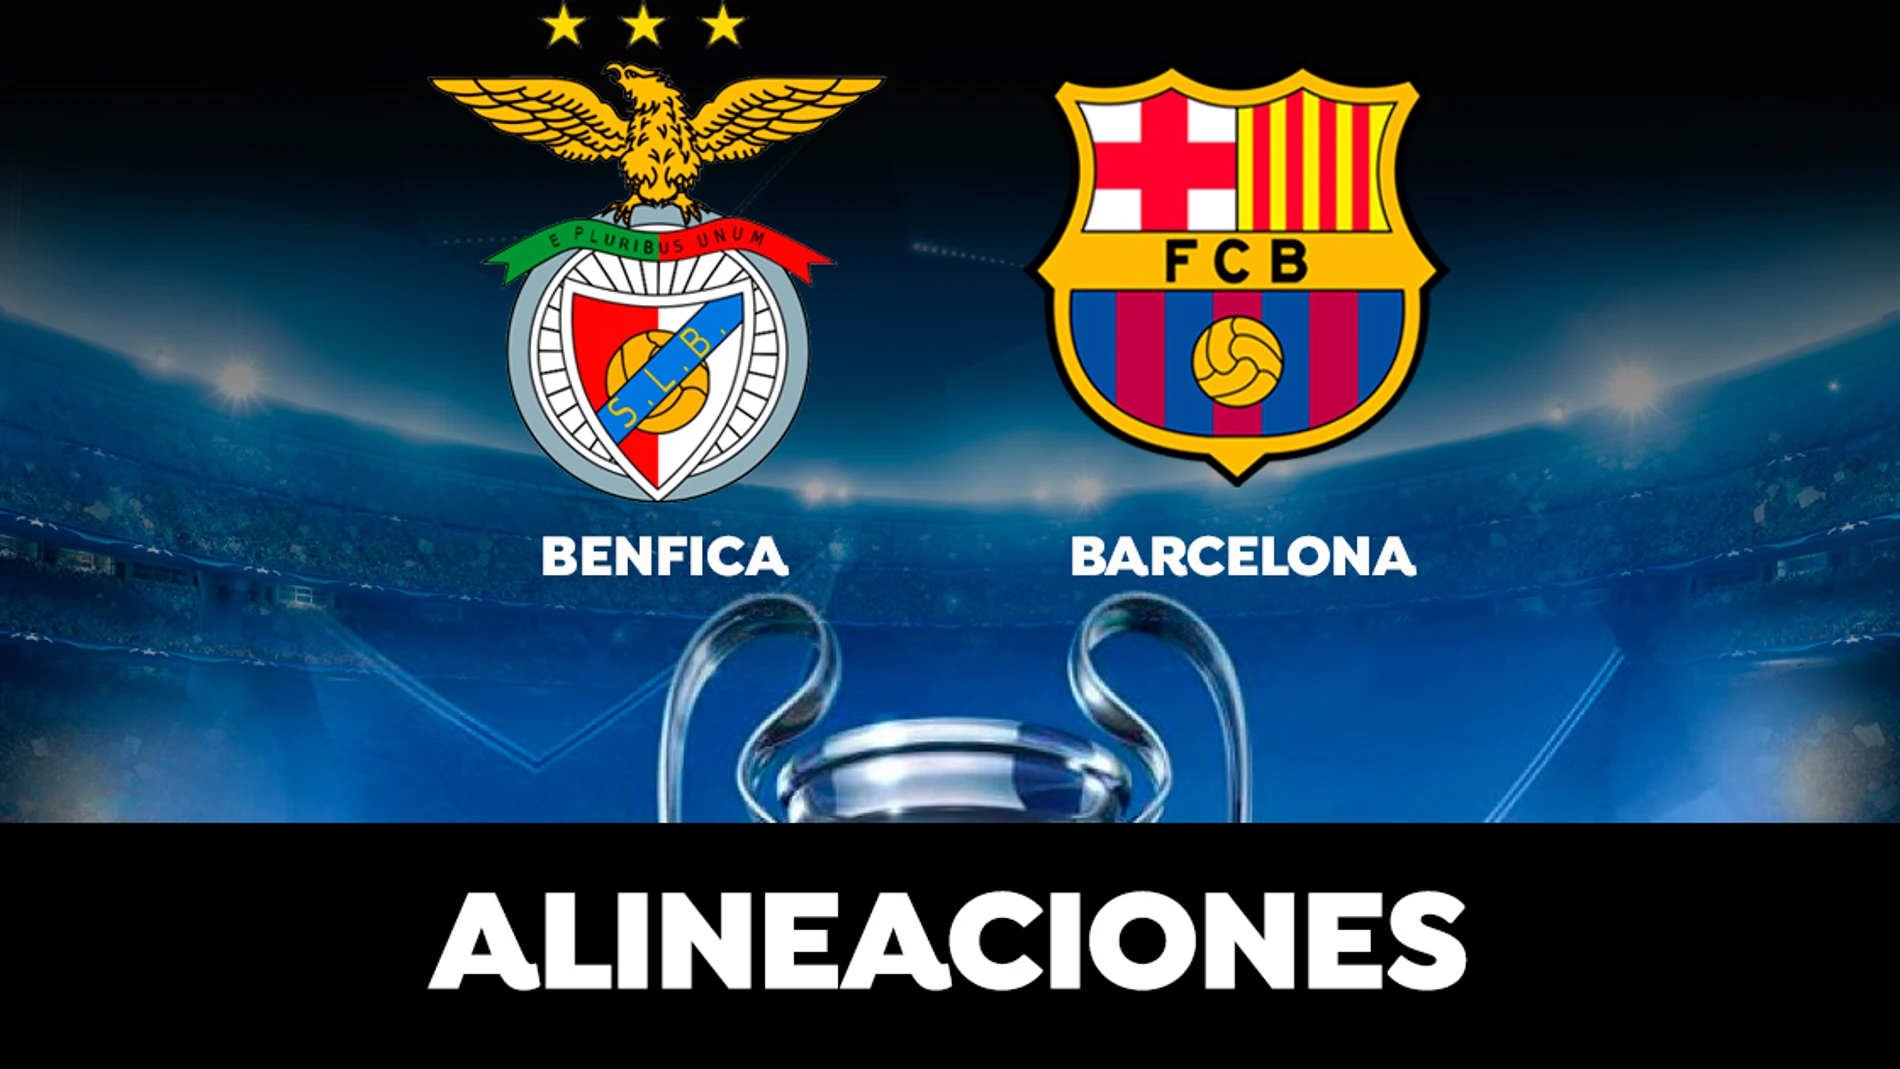 Alineación del Barcelona hoy contra el Benfica en el partido de la Champions League